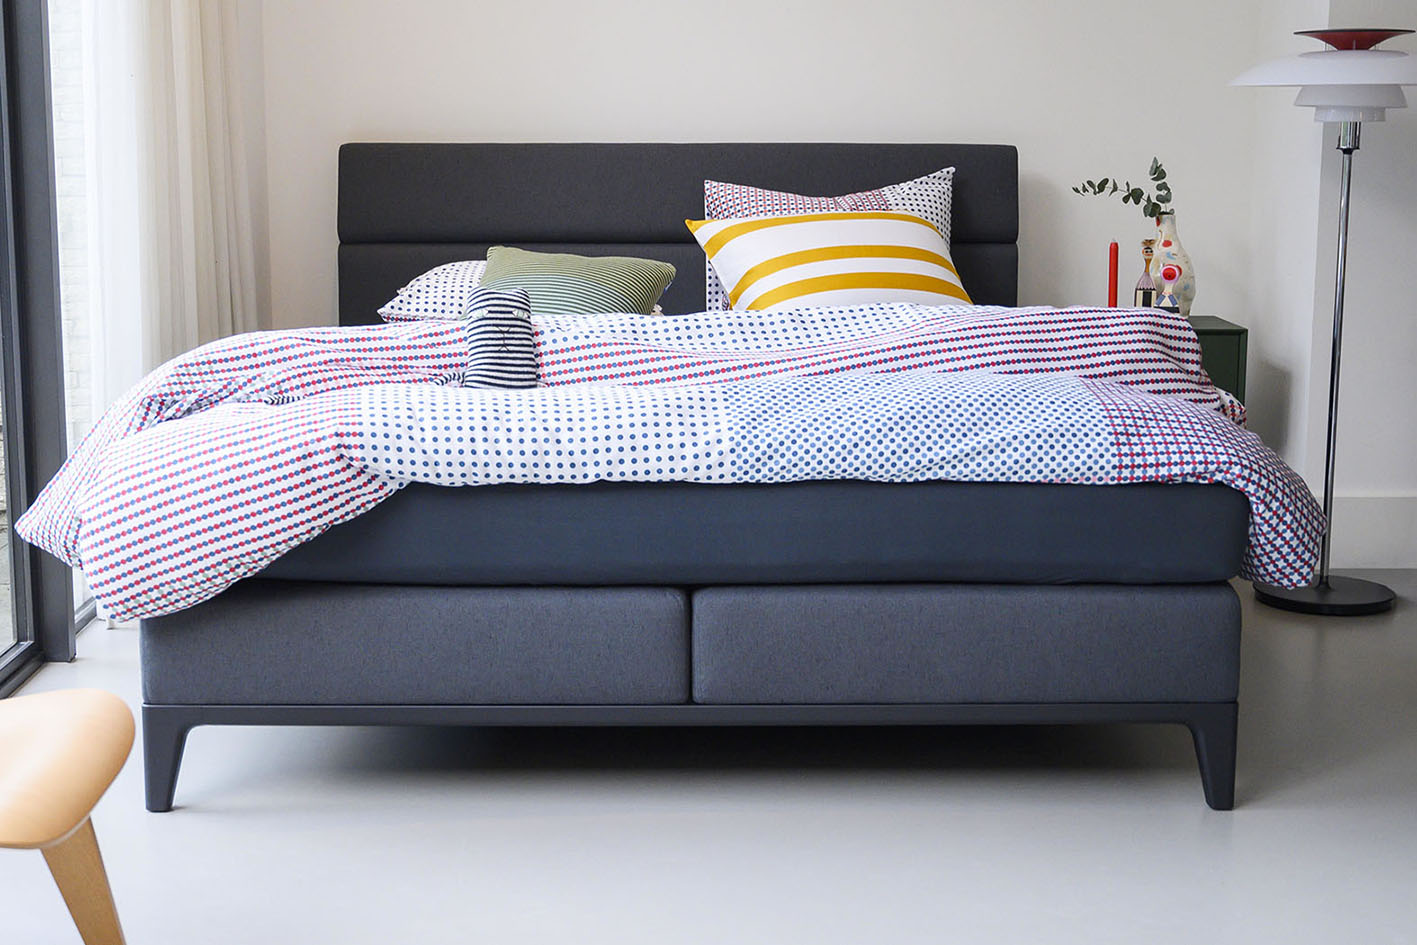 Como escolher a cama box ideal para o seu sono?